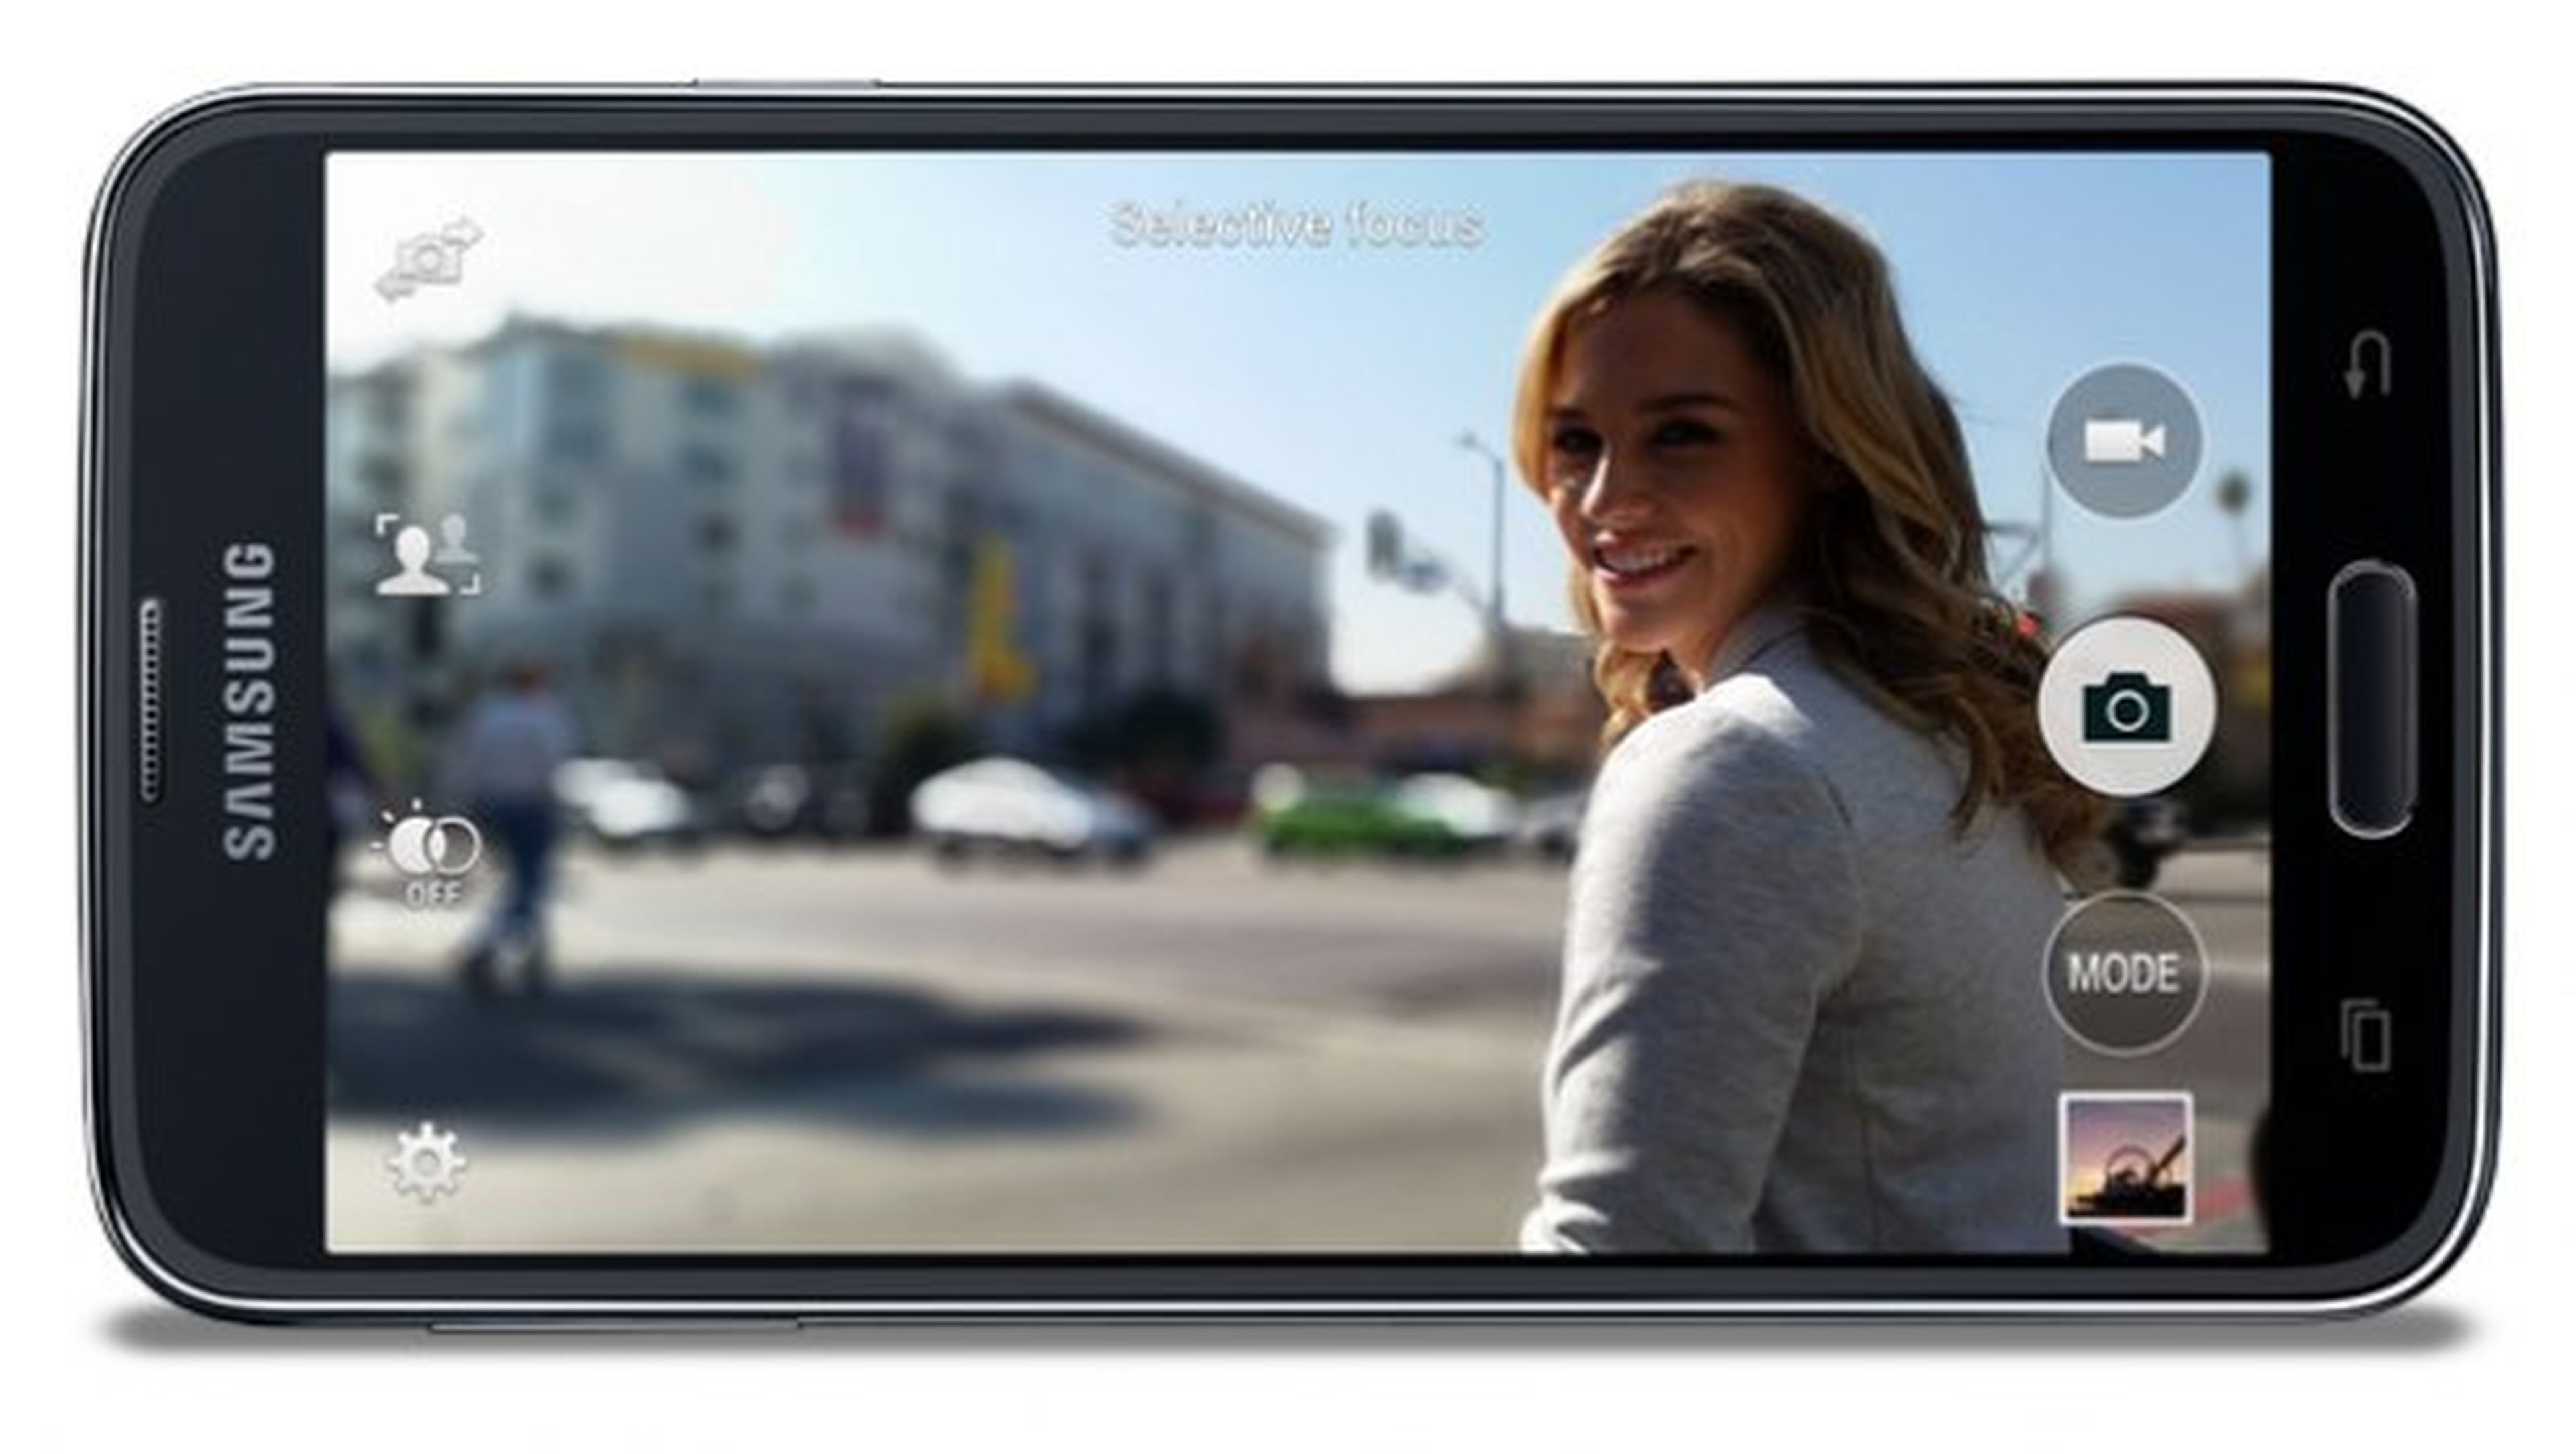 Primera actualización Samsung Galaxy S5